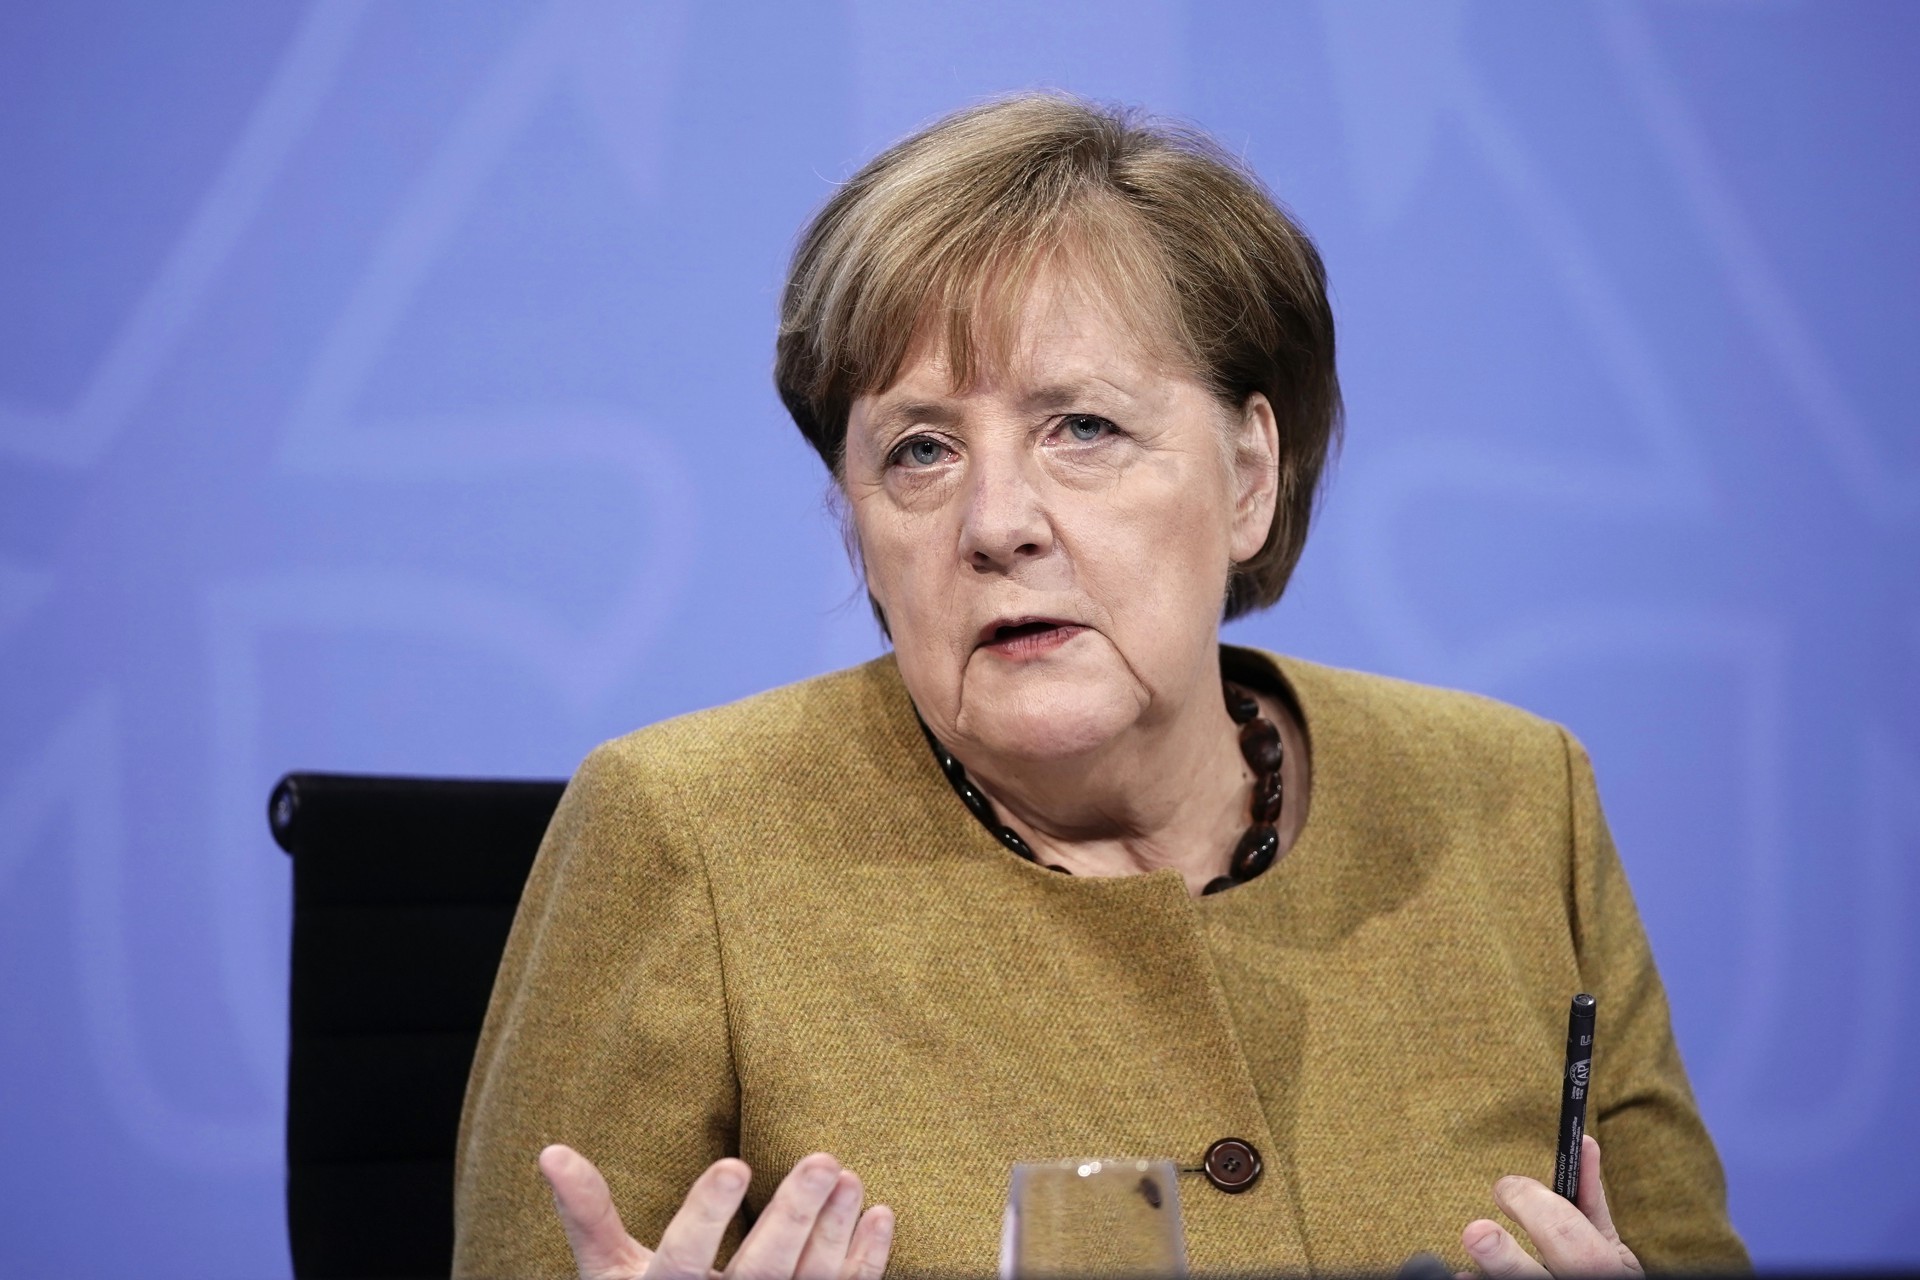 A chanceler alemã, Angela Merkel, foi uma das líderes que lançou questionamentos sobre o banimento nas redes (Foto de Michael Kappeler / POOL / AFP) (Foto: Michael Kappeler / POOL / AFP)